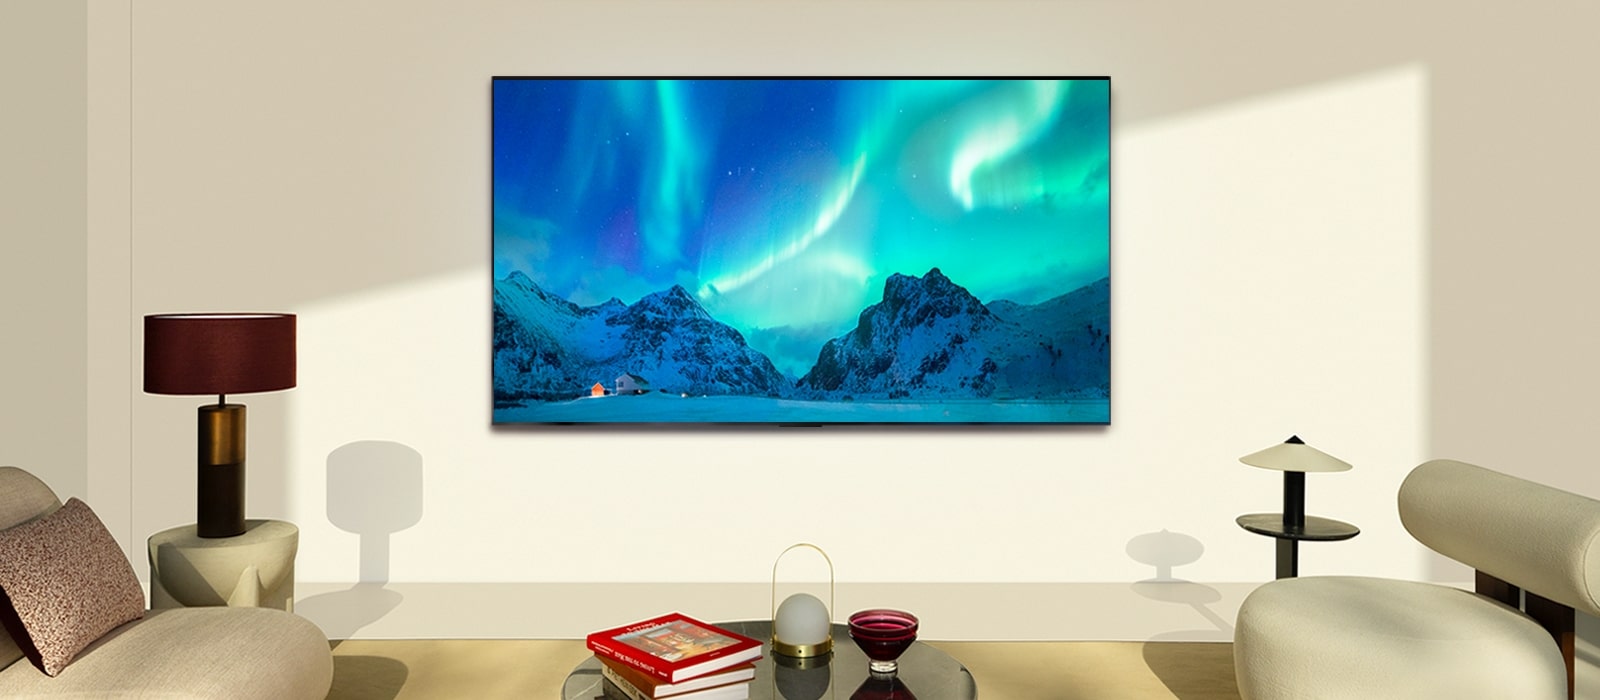 LG OLED TV modernioje gyvenamojoje erdvėje dienos metu. Poliarinės pašvaistės vaizdas ekrane rodomas idealiu ryškumo lygiu.